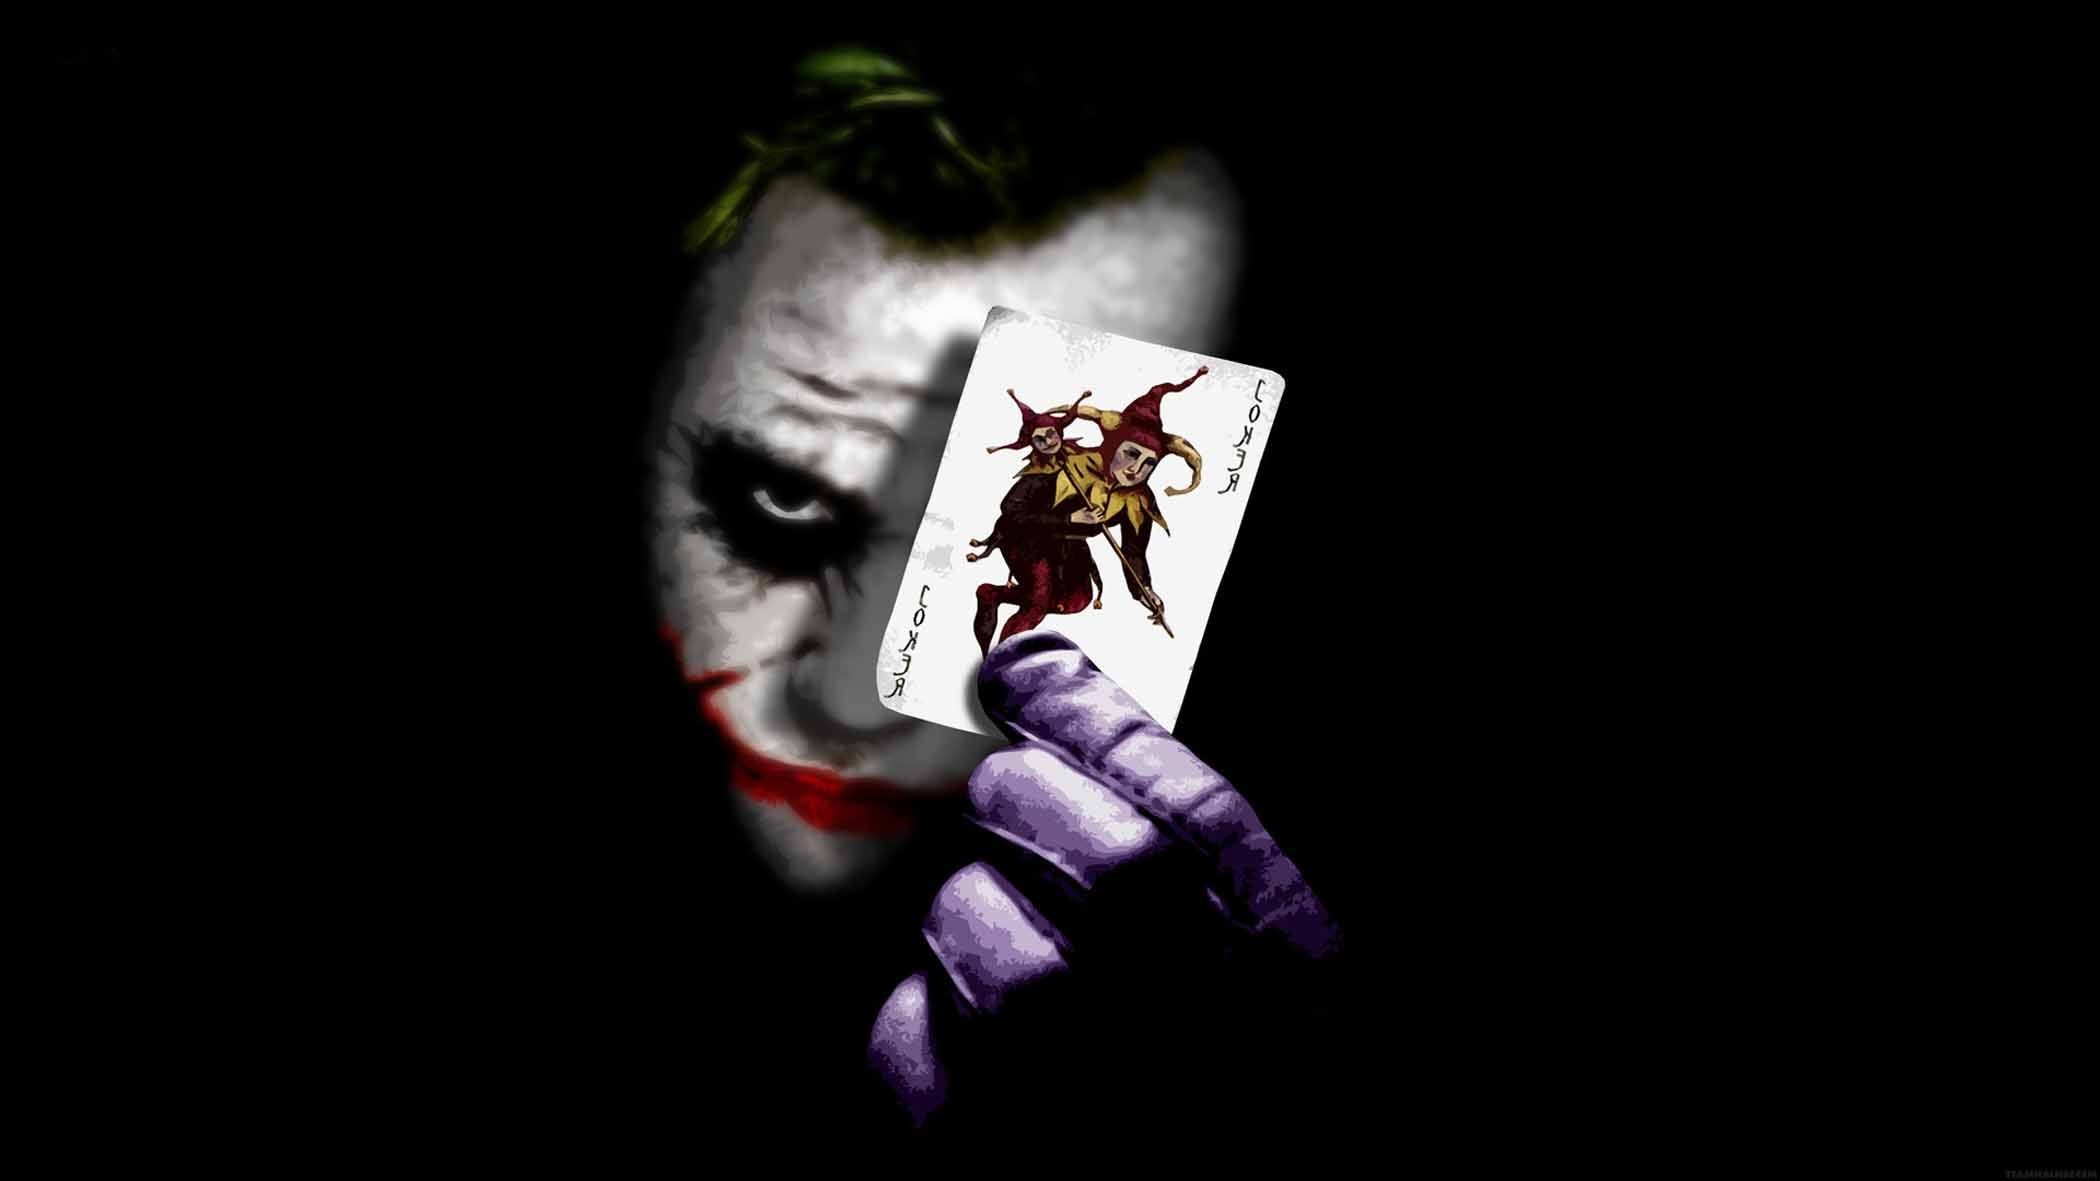 2100x1181 joker wallpaper dark knight Joker the dark knight movie HD wallpaper Latest  HD Wallpapers